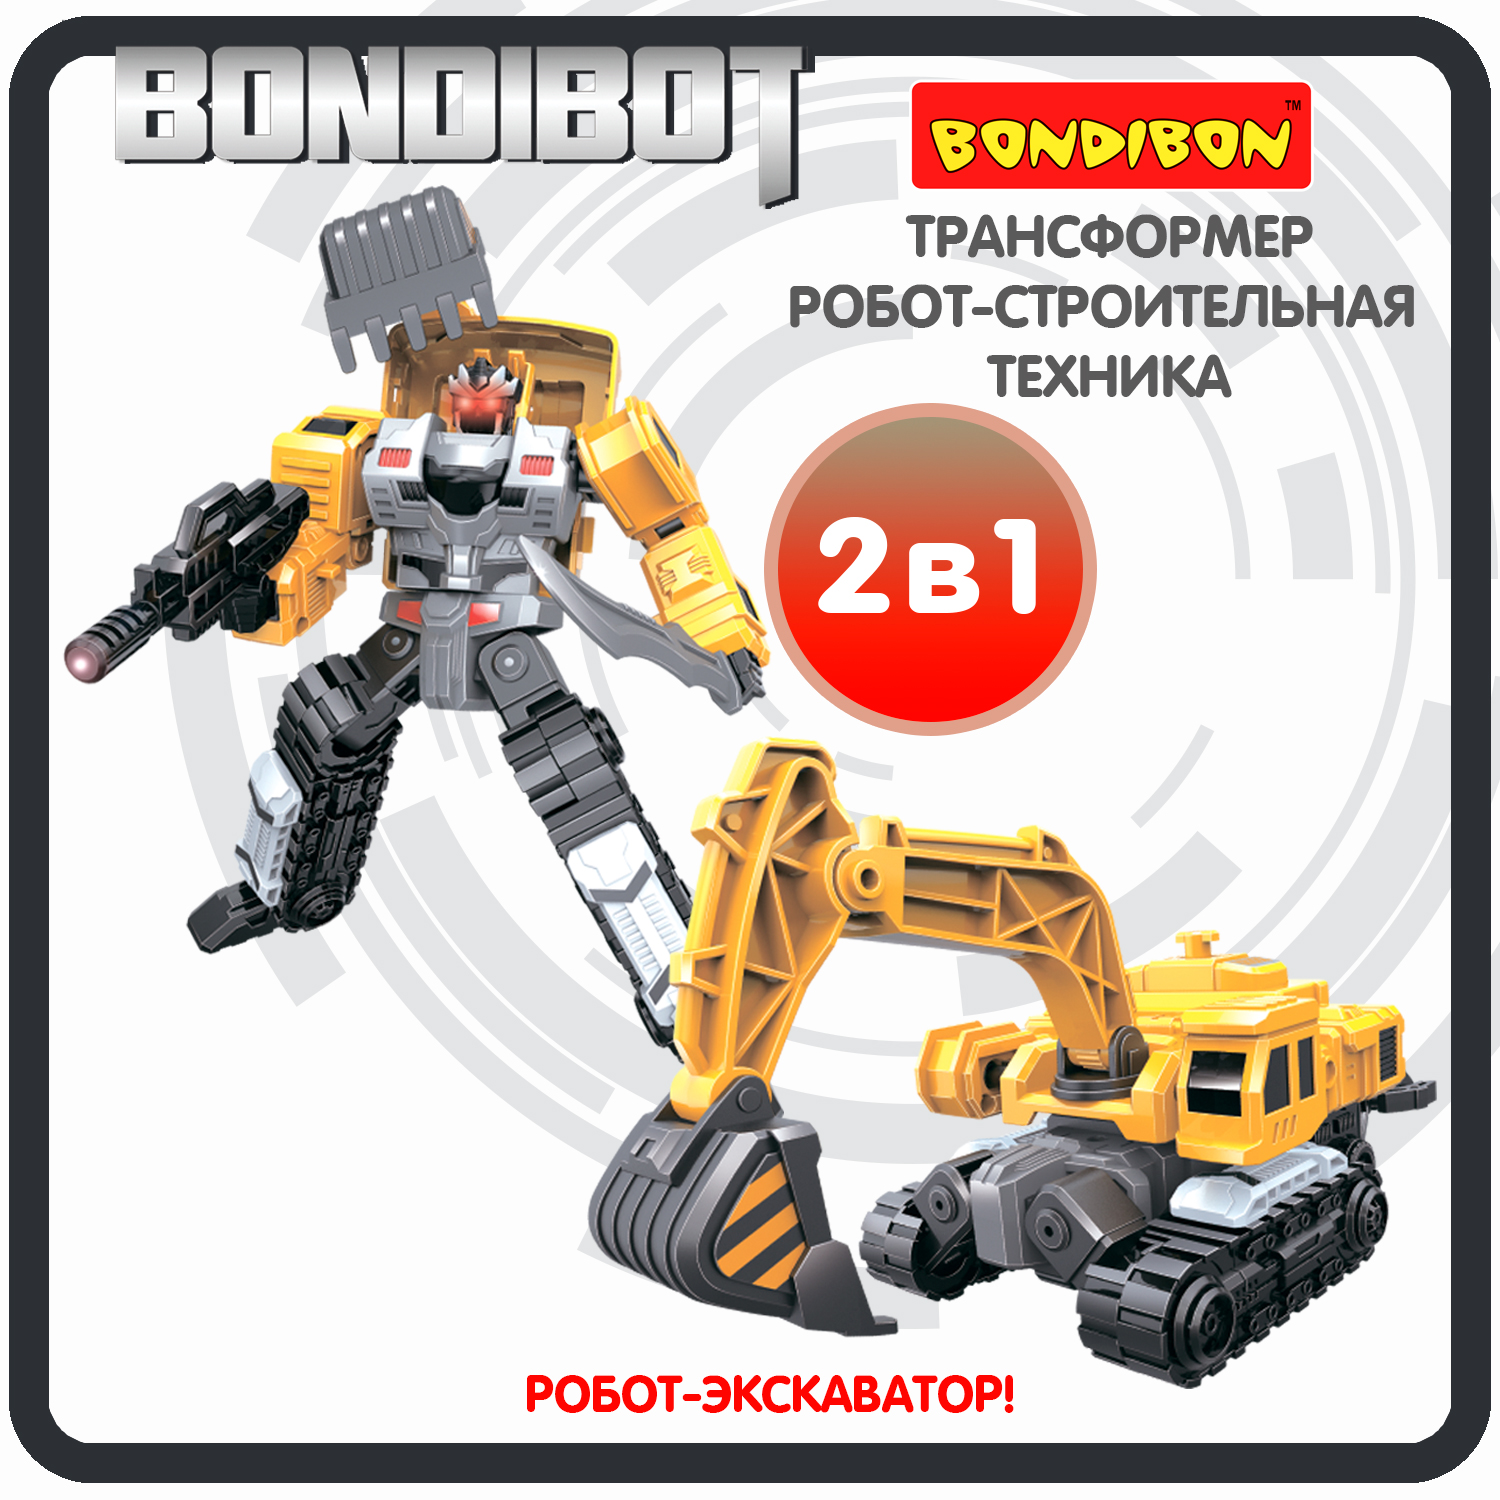 Трансформер робот-строительная техника, 2в1 BONDIBOT Bondibon, экскаватор / ВВ6048 робот трансформер hasbro титаны бамблби 33504